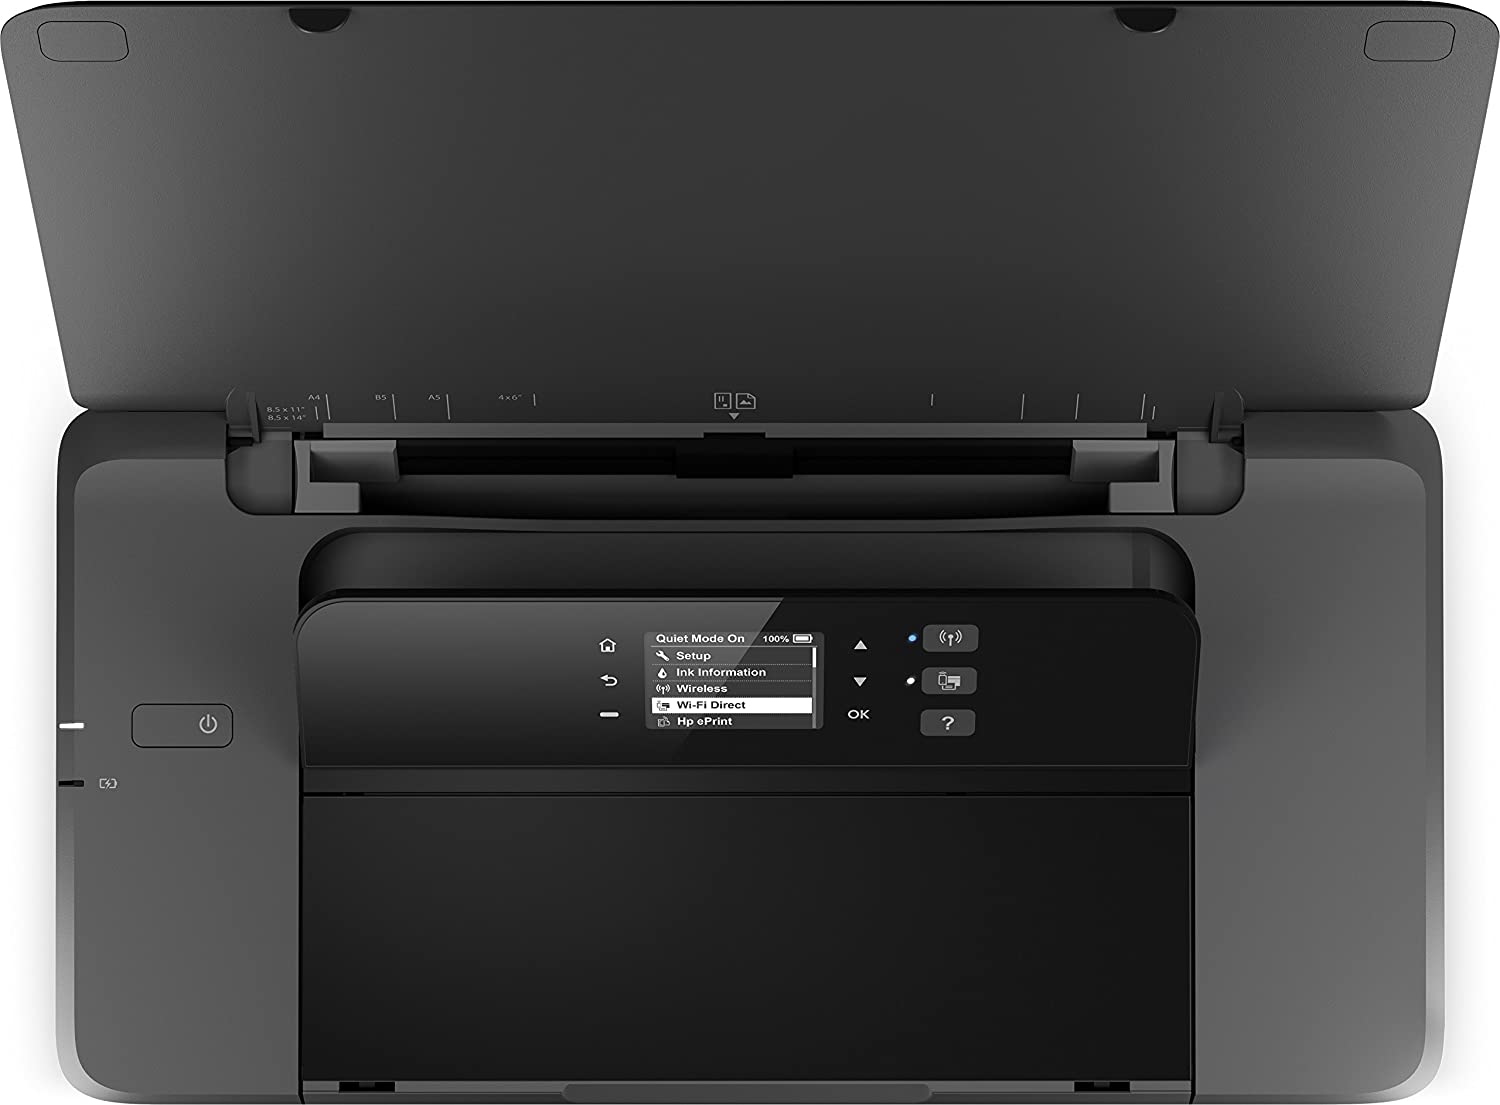 HP OfficeJet 200 Mobiler Tintenstrahldrucker | WLAN ...